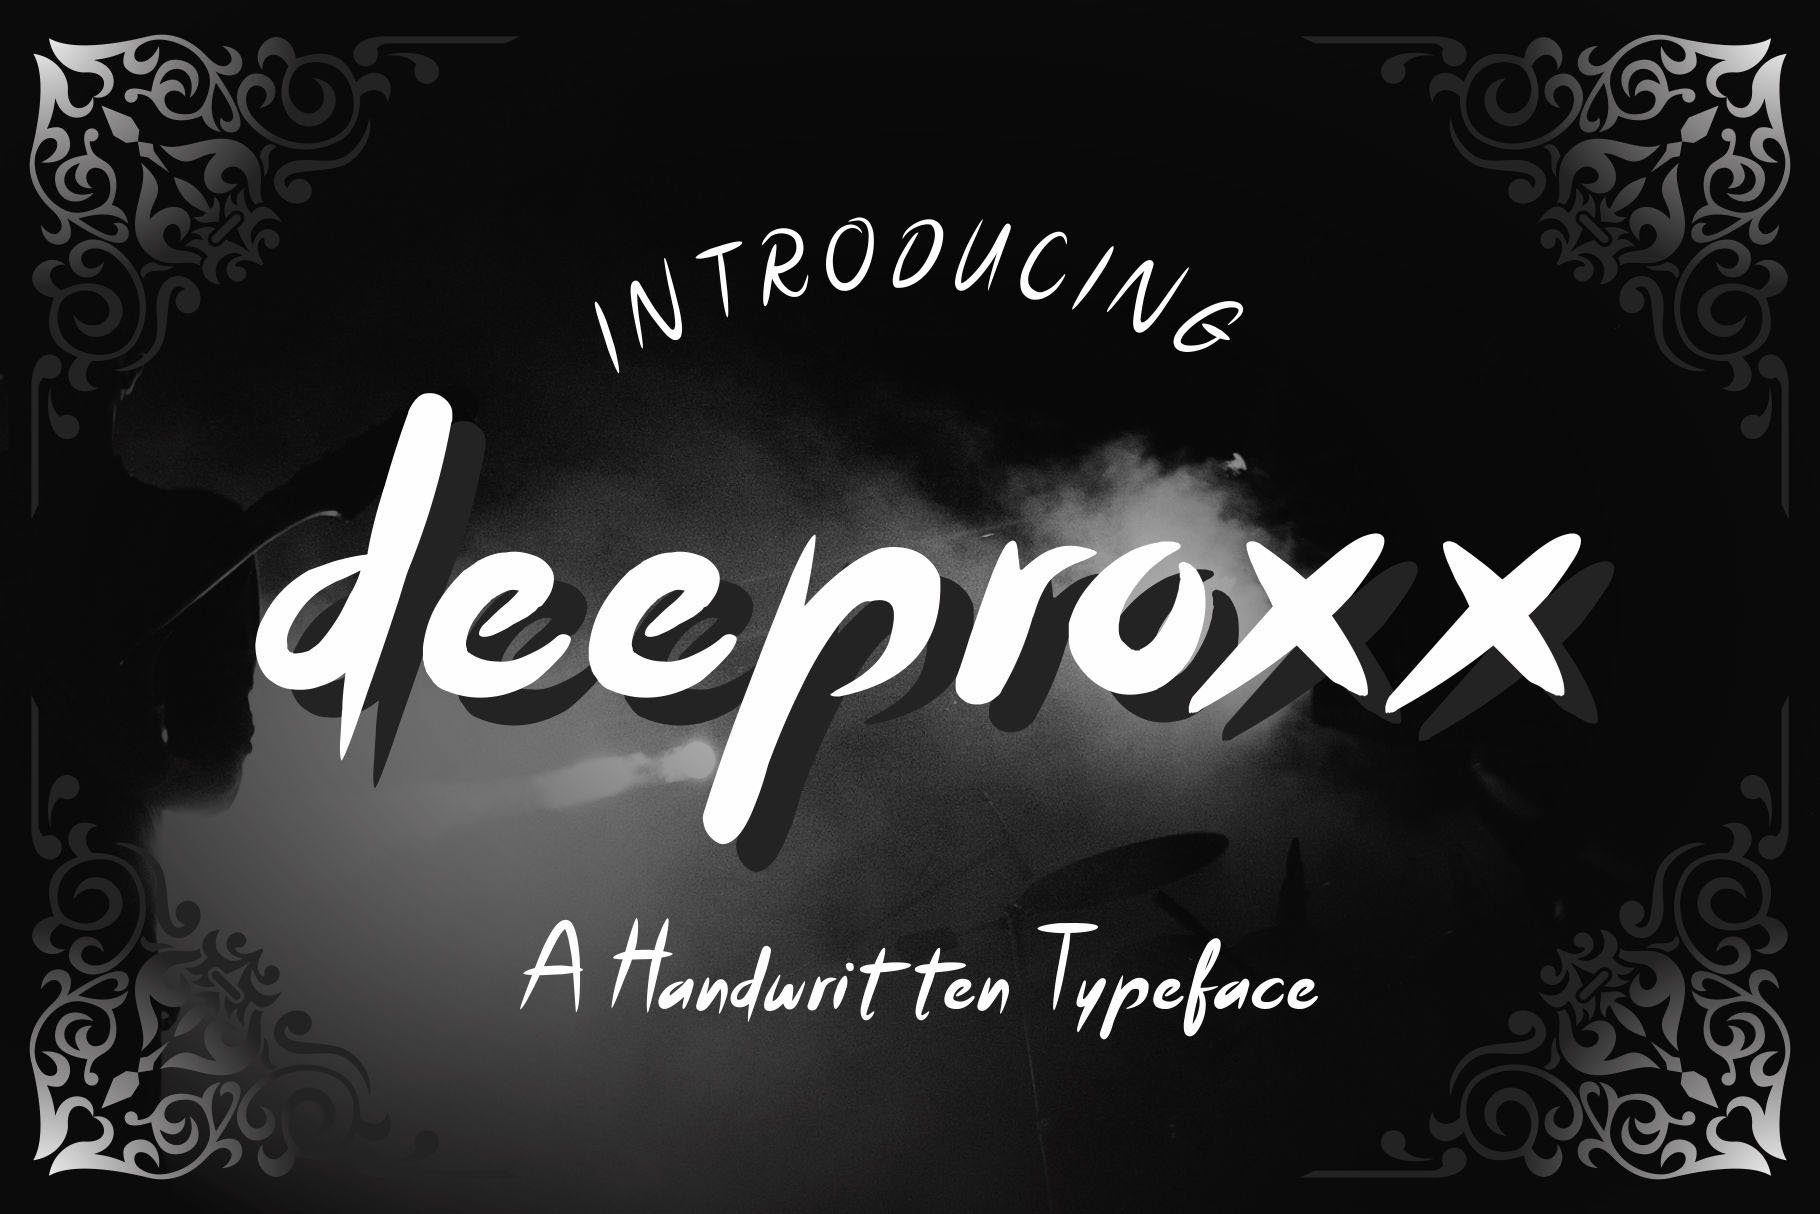 Deeproxx - A Handwritten Font cover image.